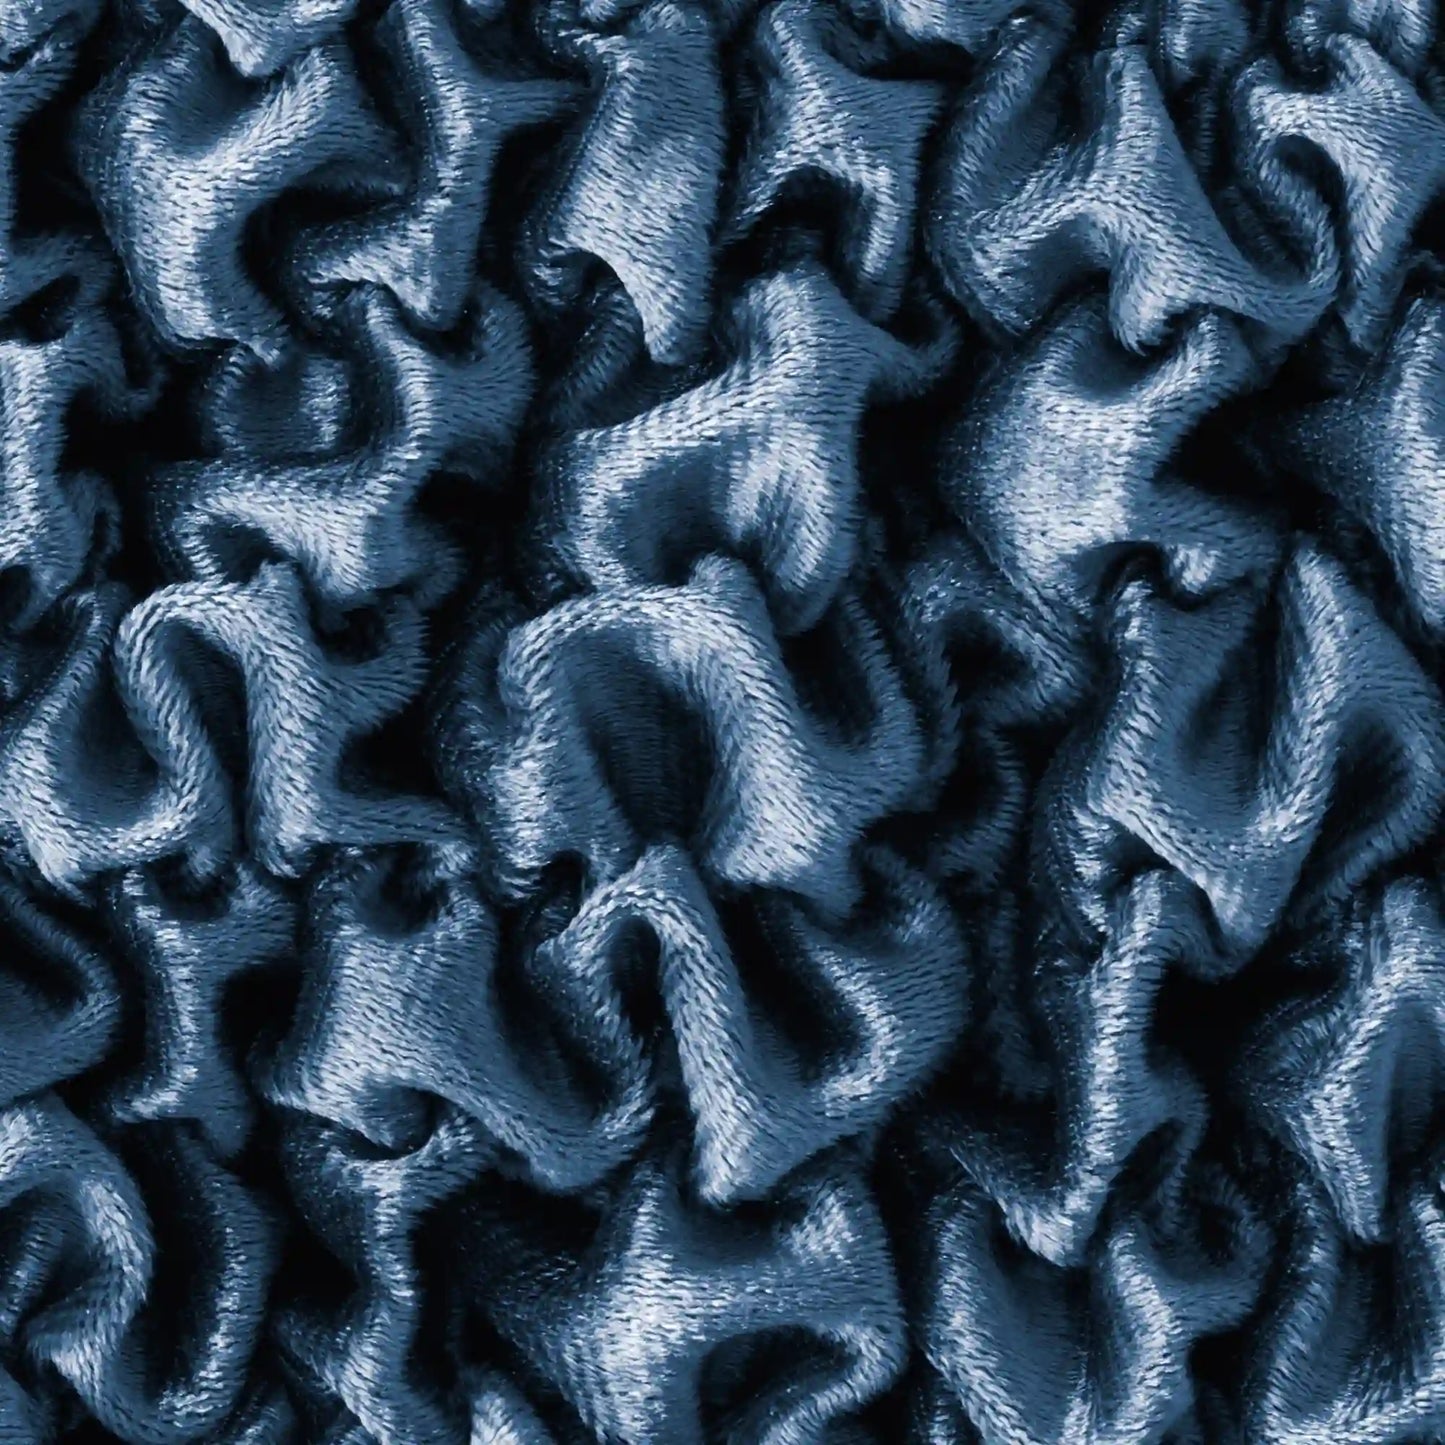 Corner Sofa Cover - Blue, Fuco Velvet